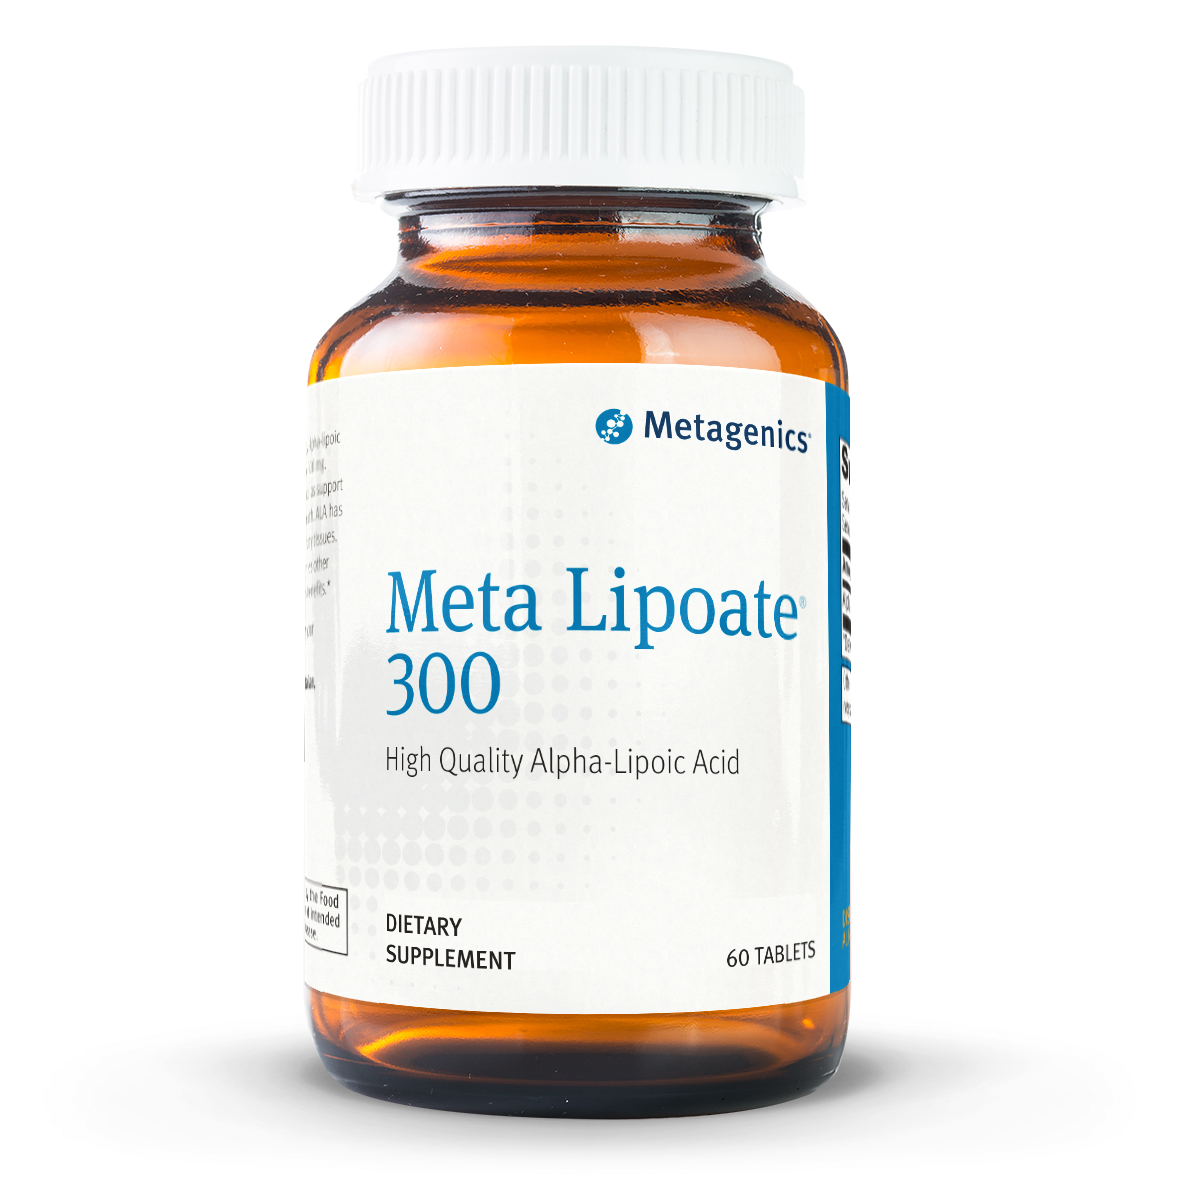 Metagenics Meta Lipoate 300